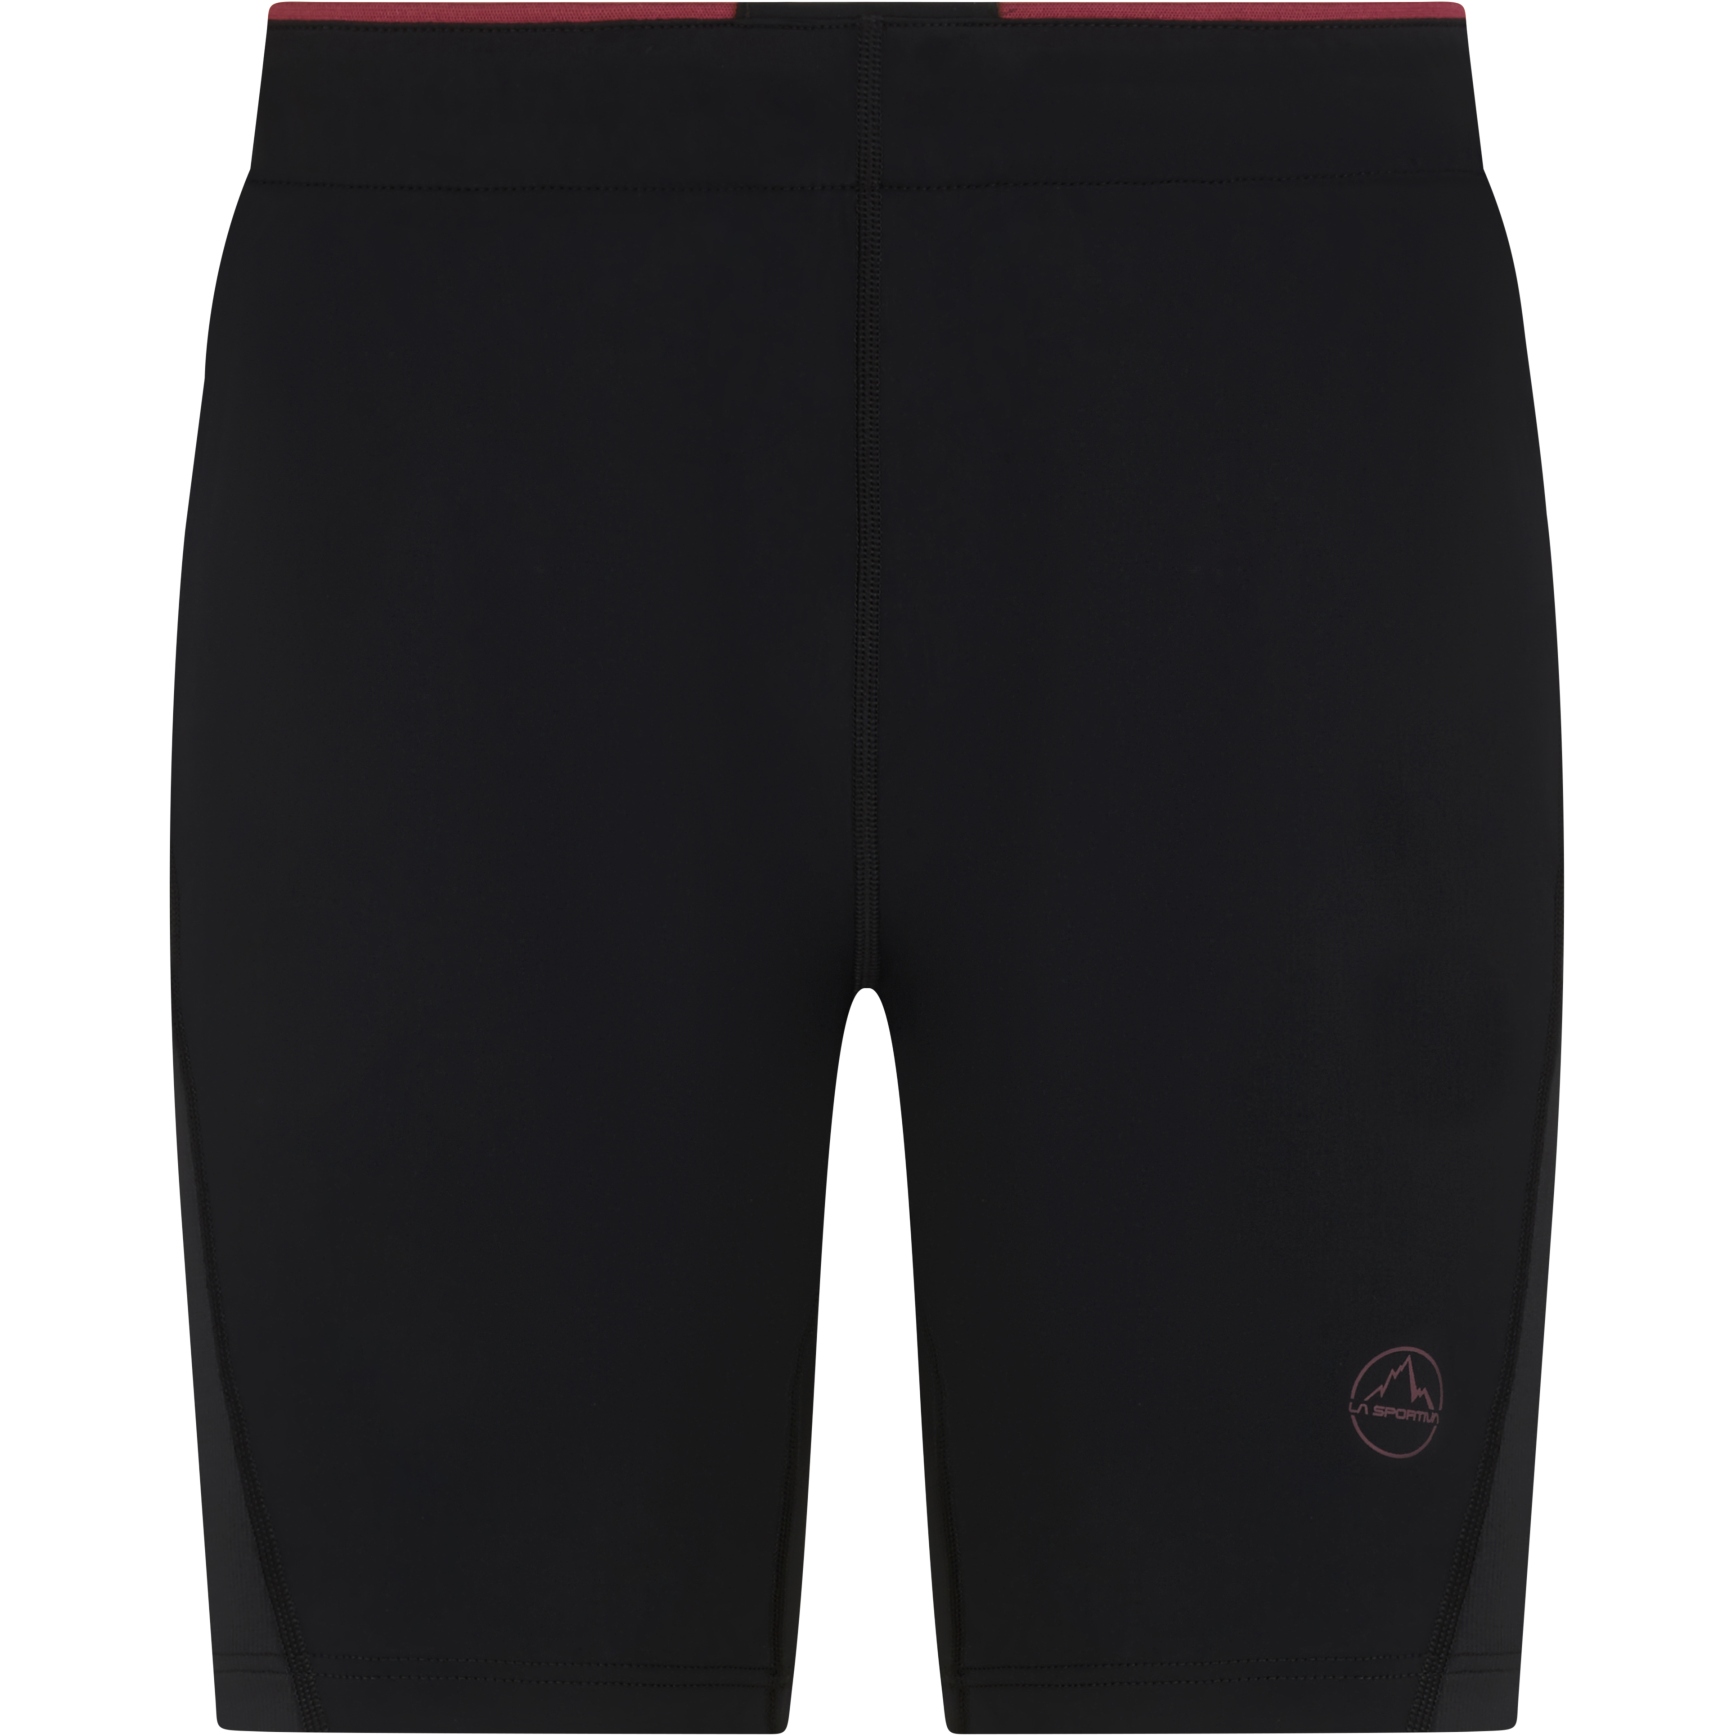 Picture of La Sportiva Triumph Tight Shorts Women - Black/Red Plum